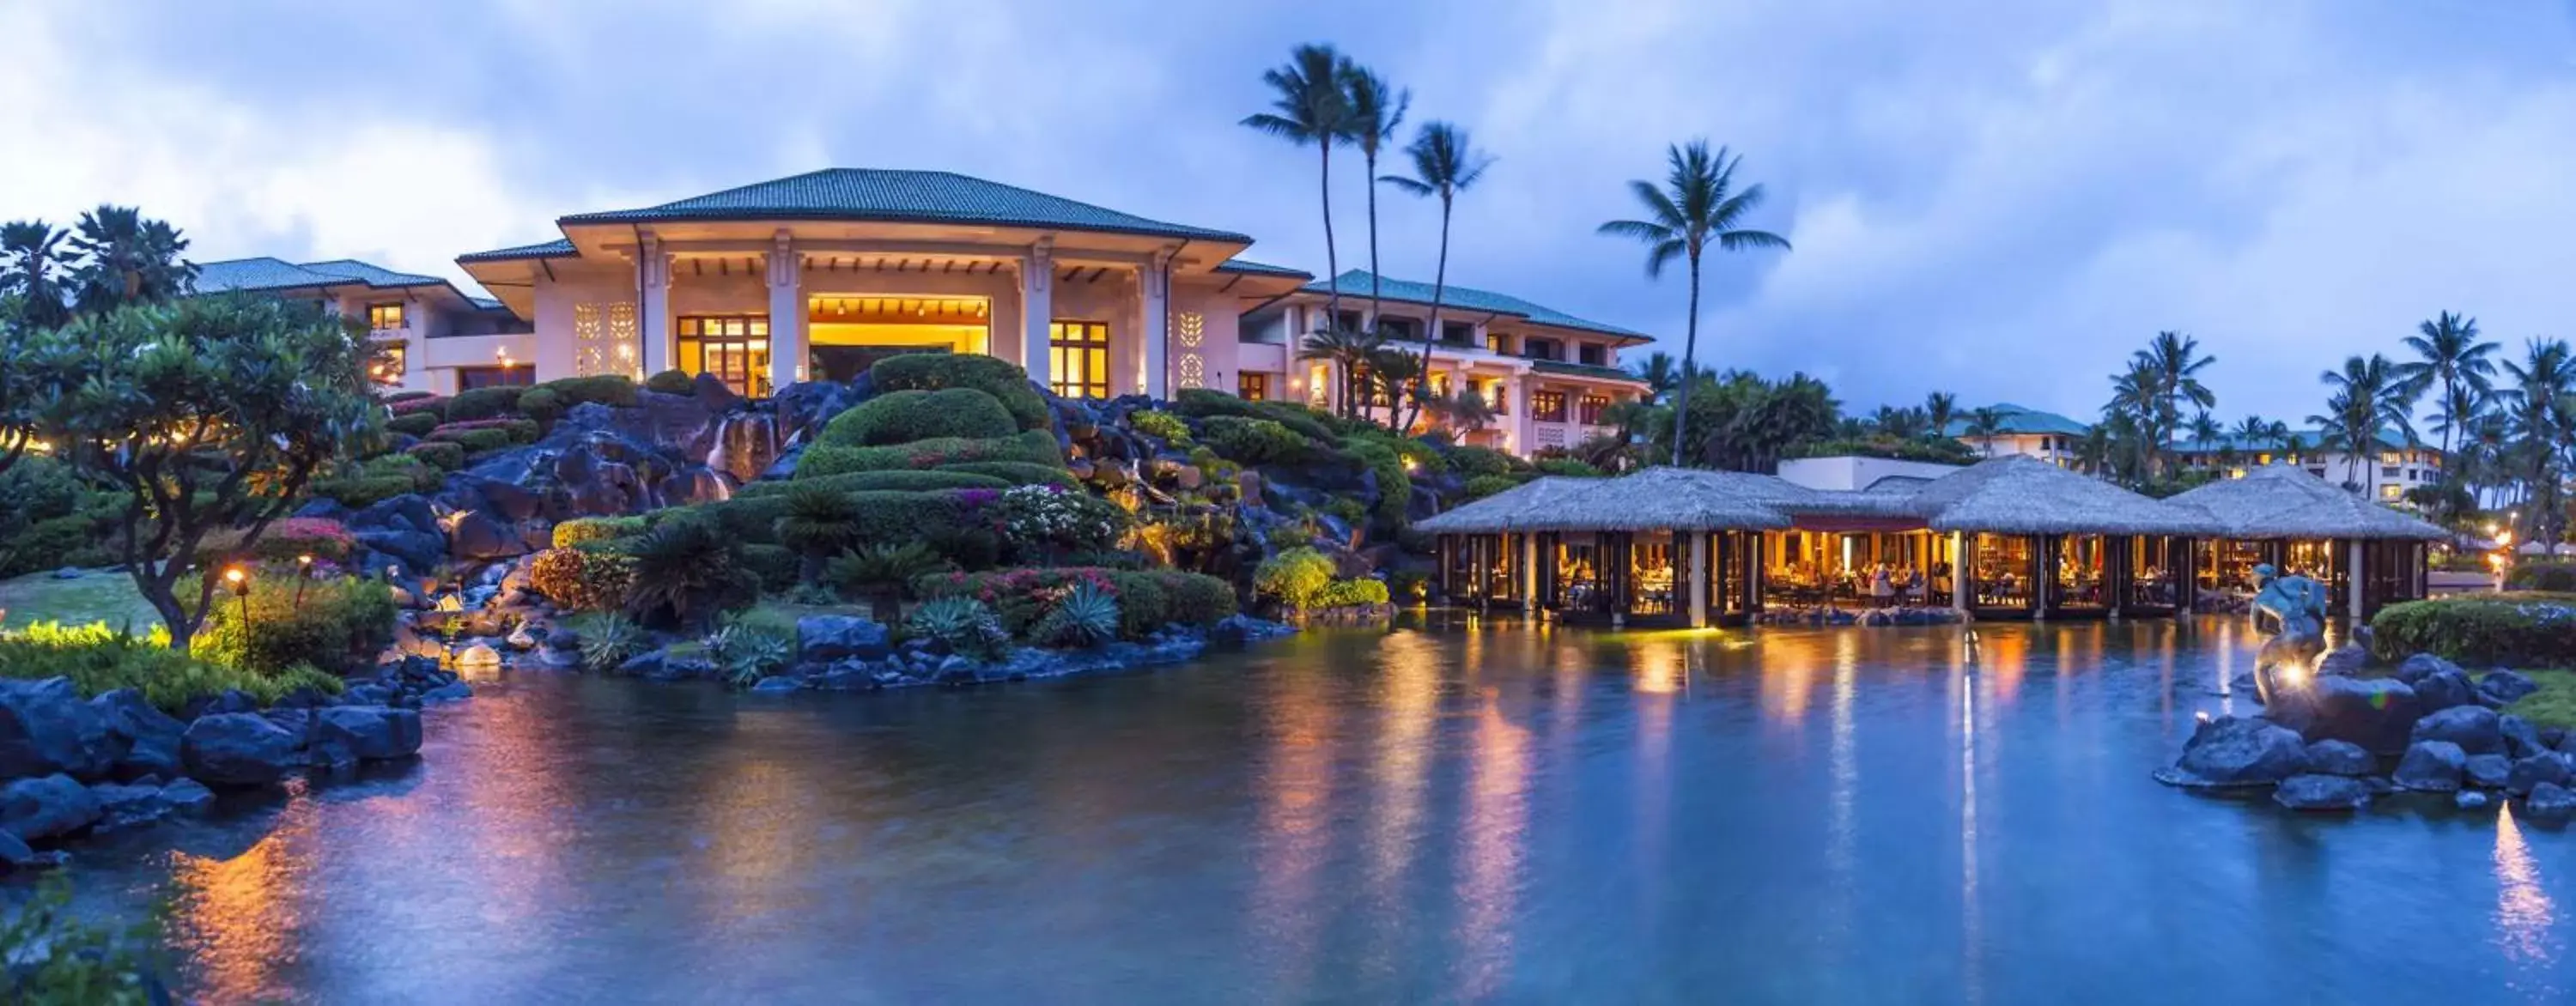 Property Building in Grand Hyatt Kauai Resort & Spa